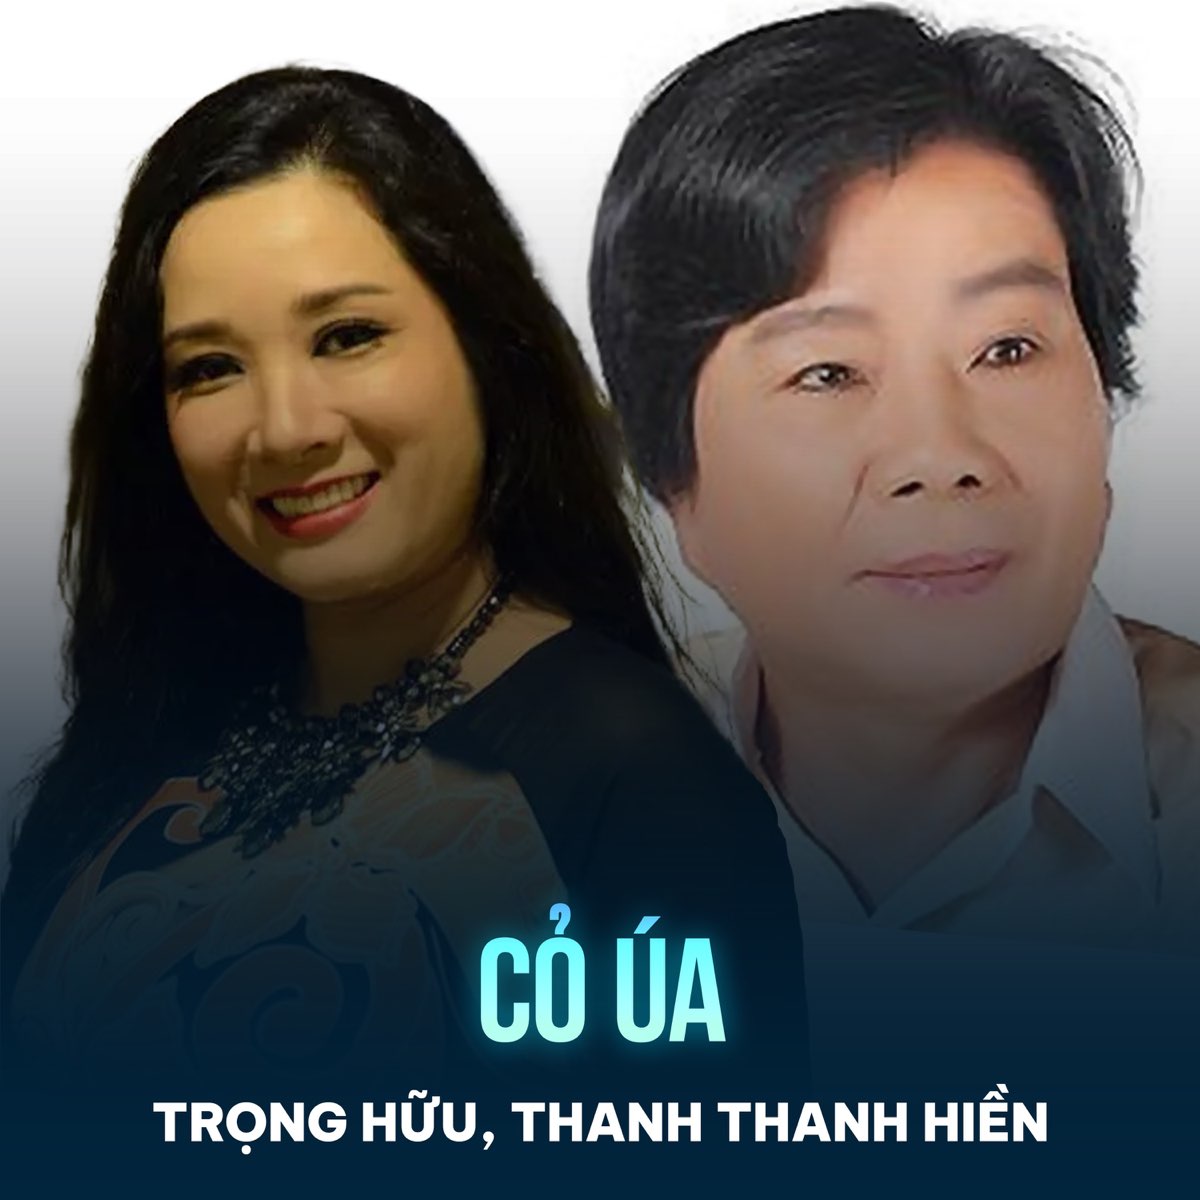 ‎Cỏ Úa - Single by Trọng Hữu & Thanh Thanh Hiền on Apple Music